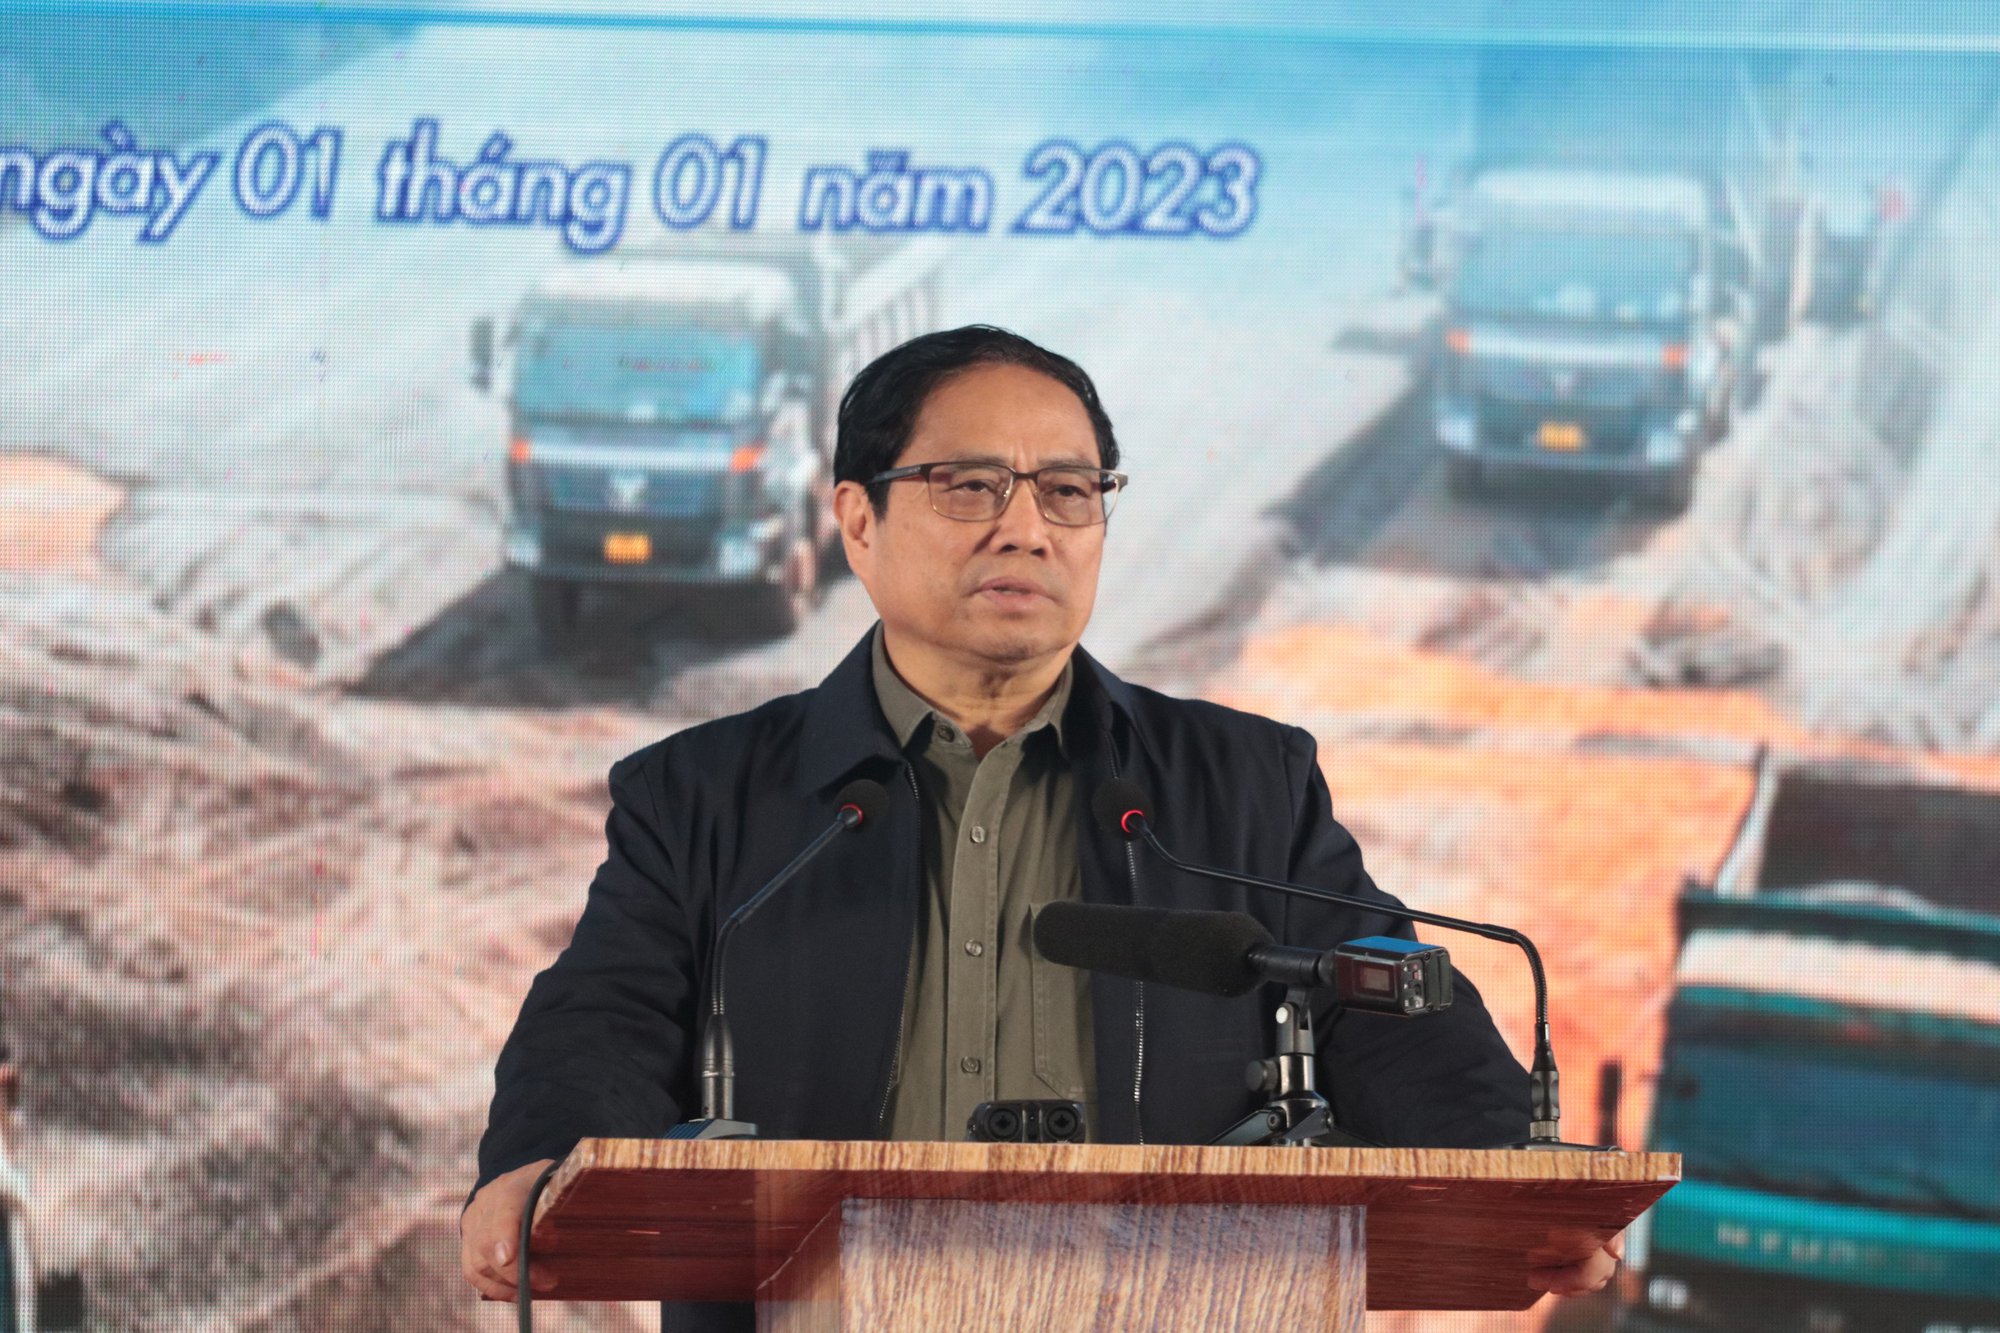 Chính thức khởi công Dự án cao tốc Bắc - Nam giai đoạn 2021-2025 - Ảnh 7.